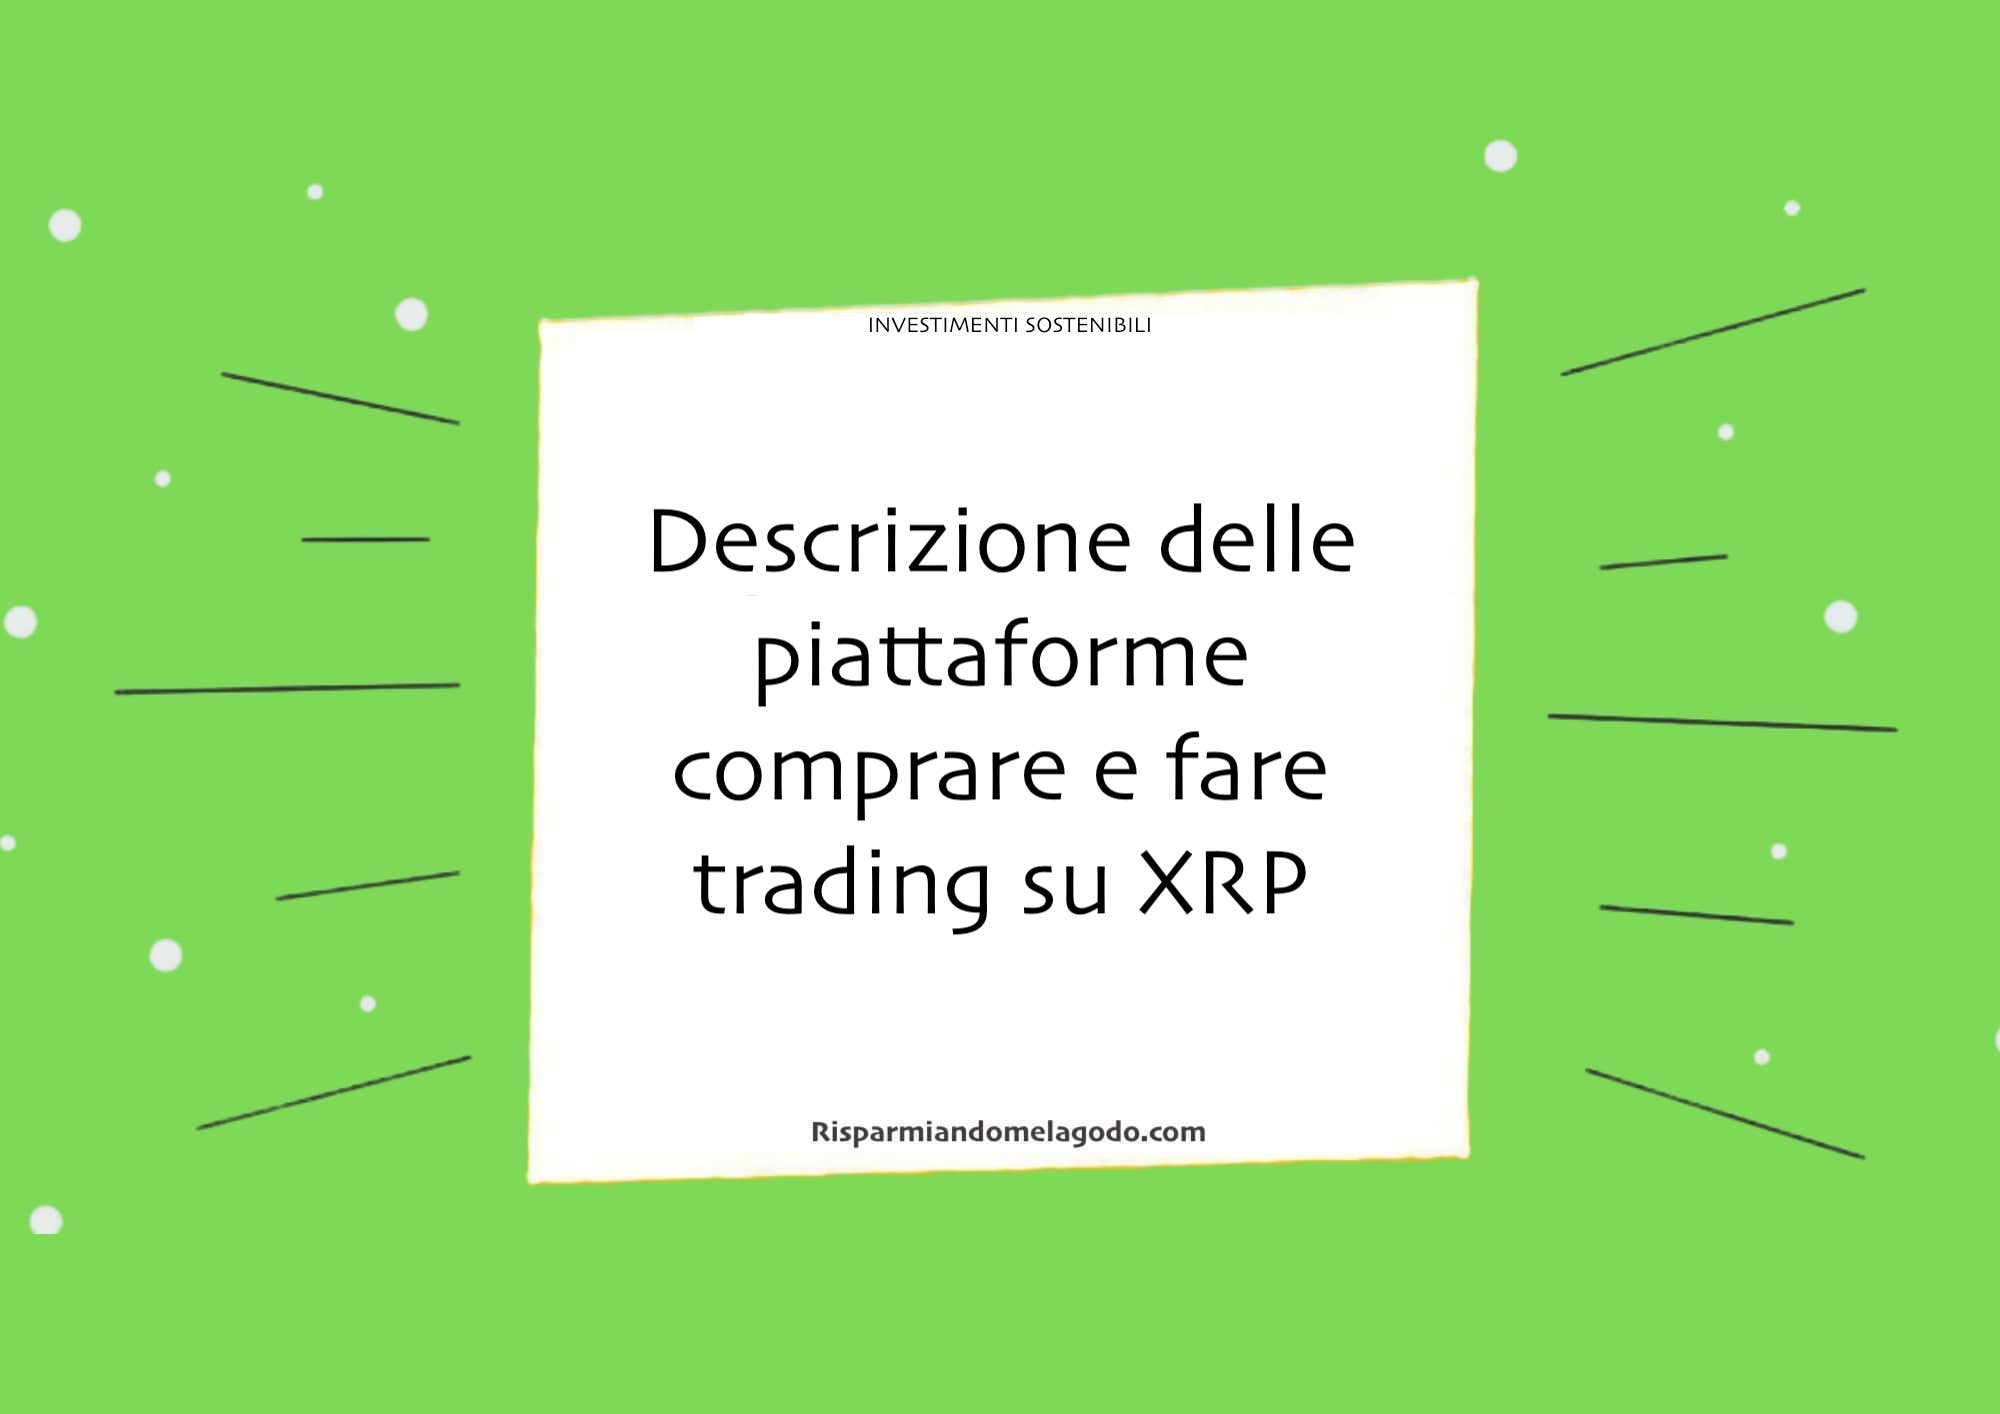 Descrizione delle piattaforme comprare e fare trading su XRP